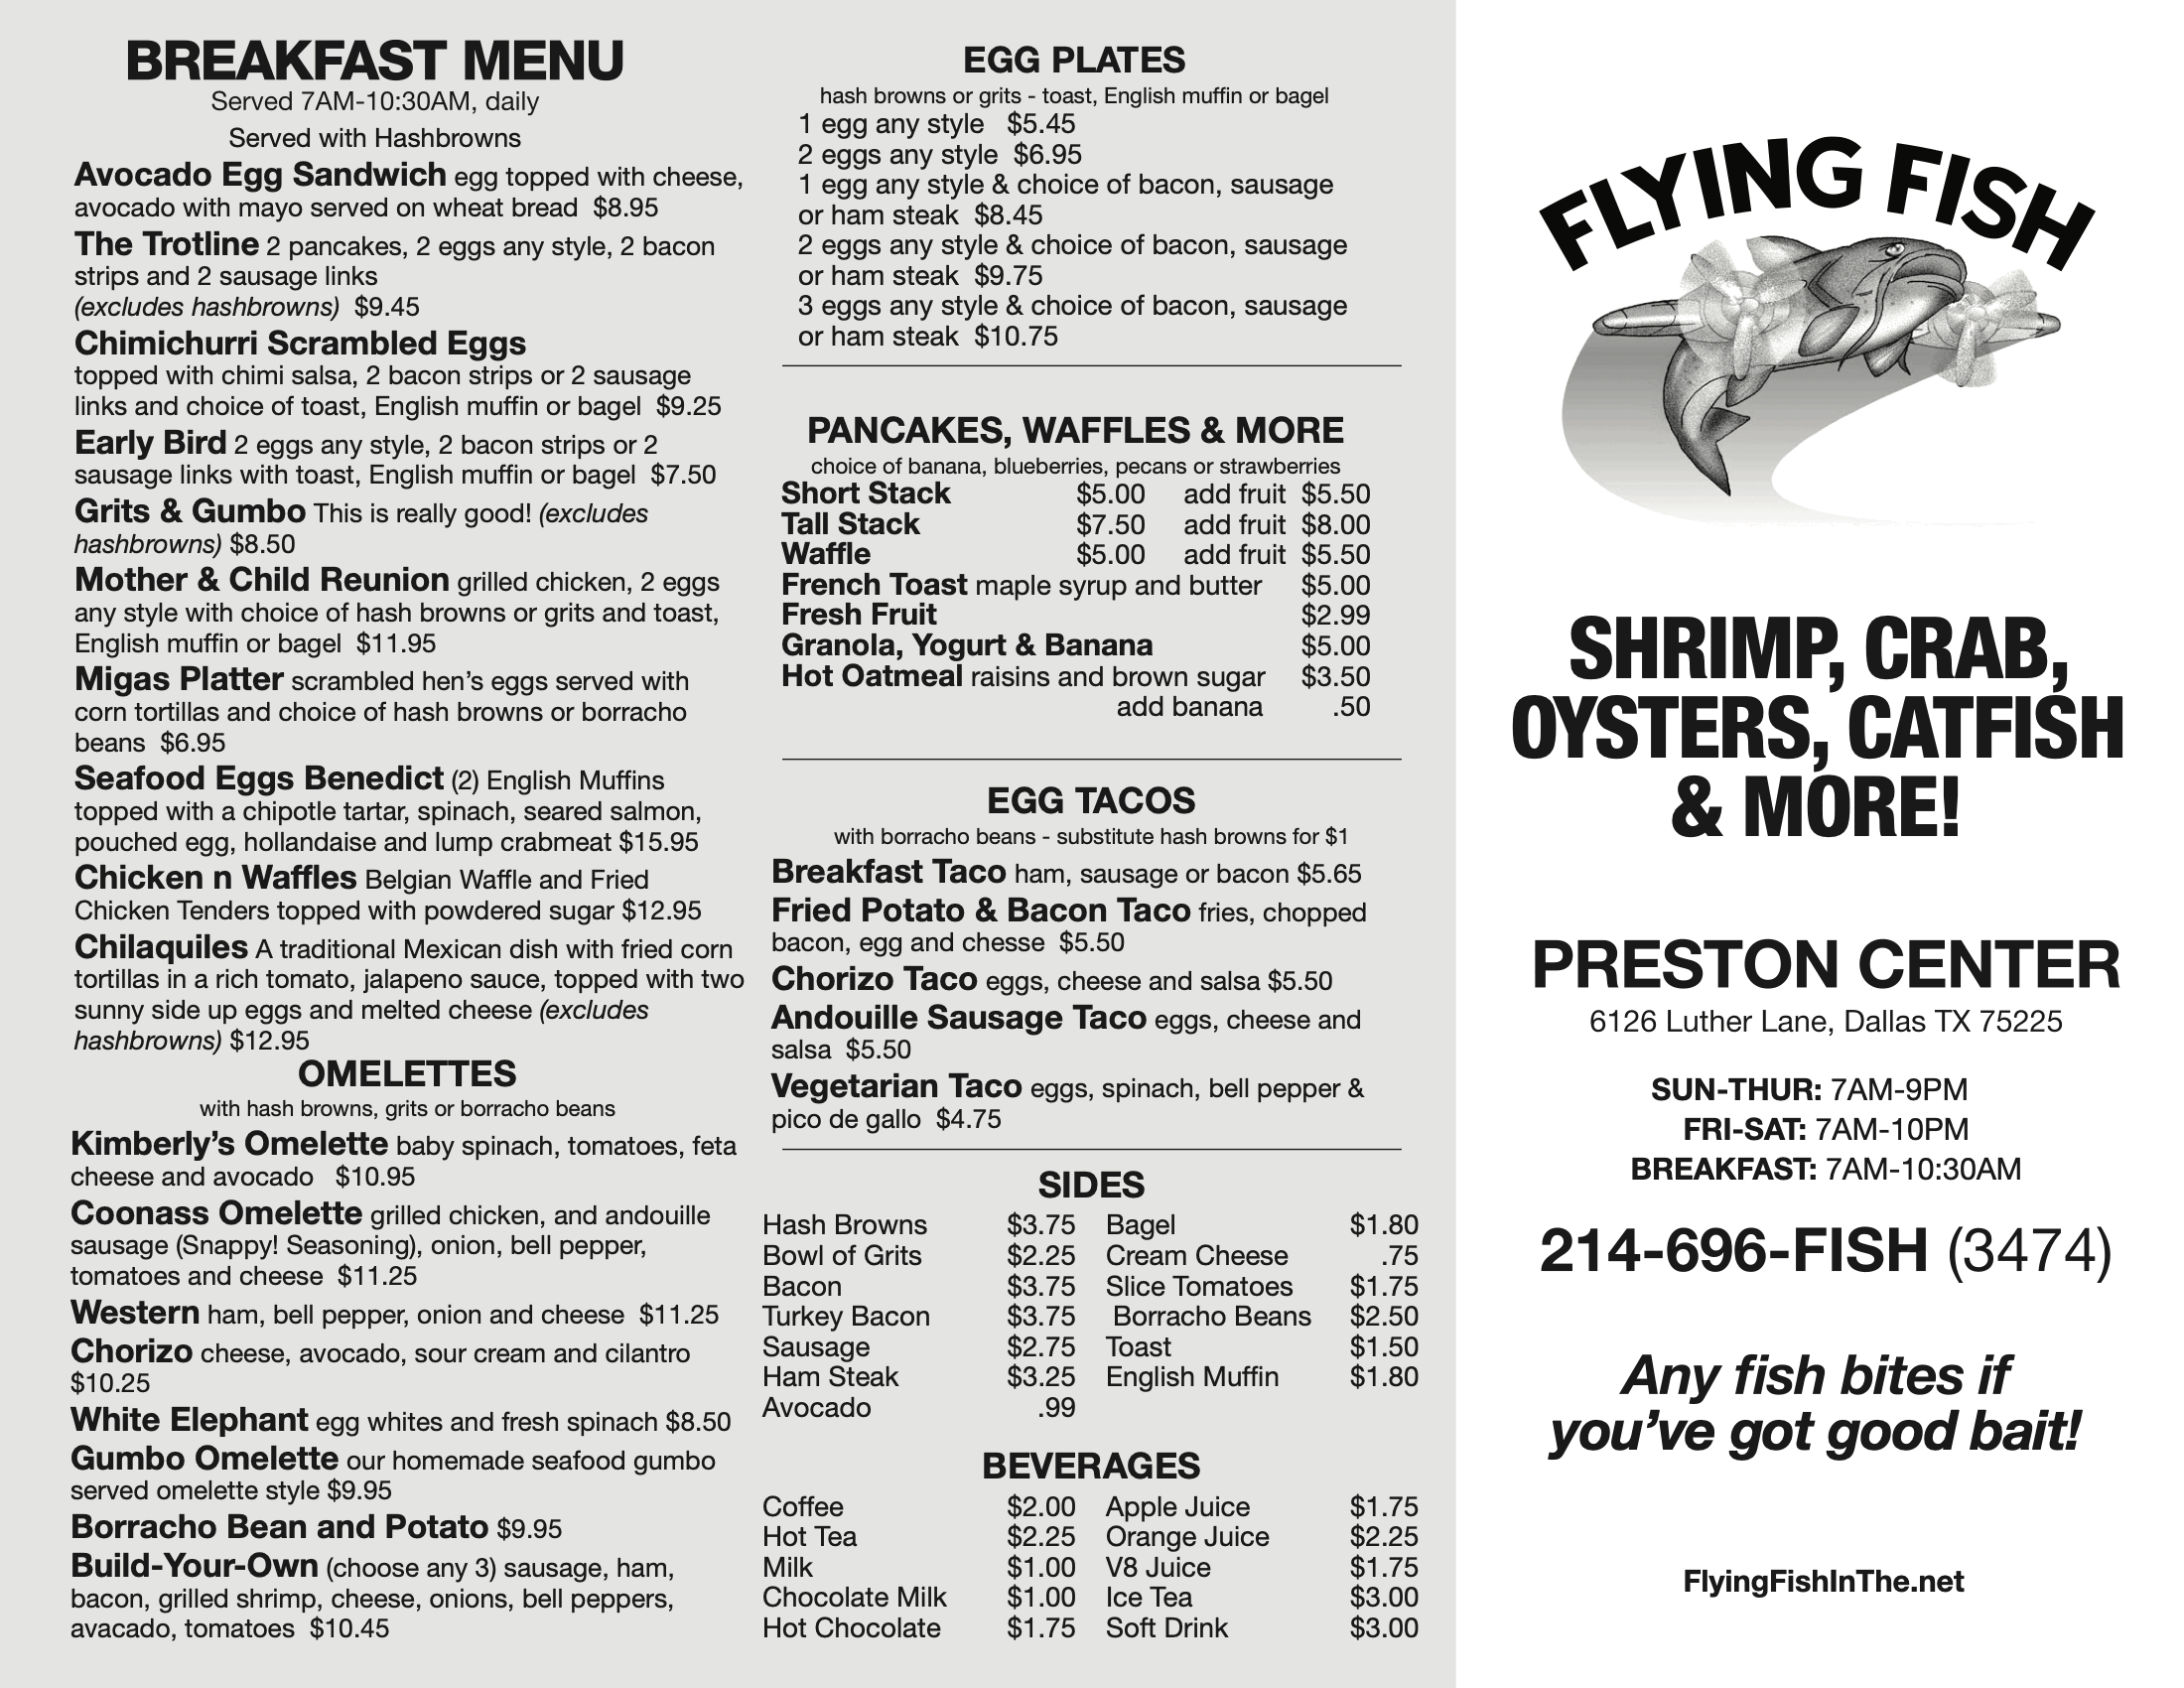 Flying Fish Preston Center's Breakfast Menu